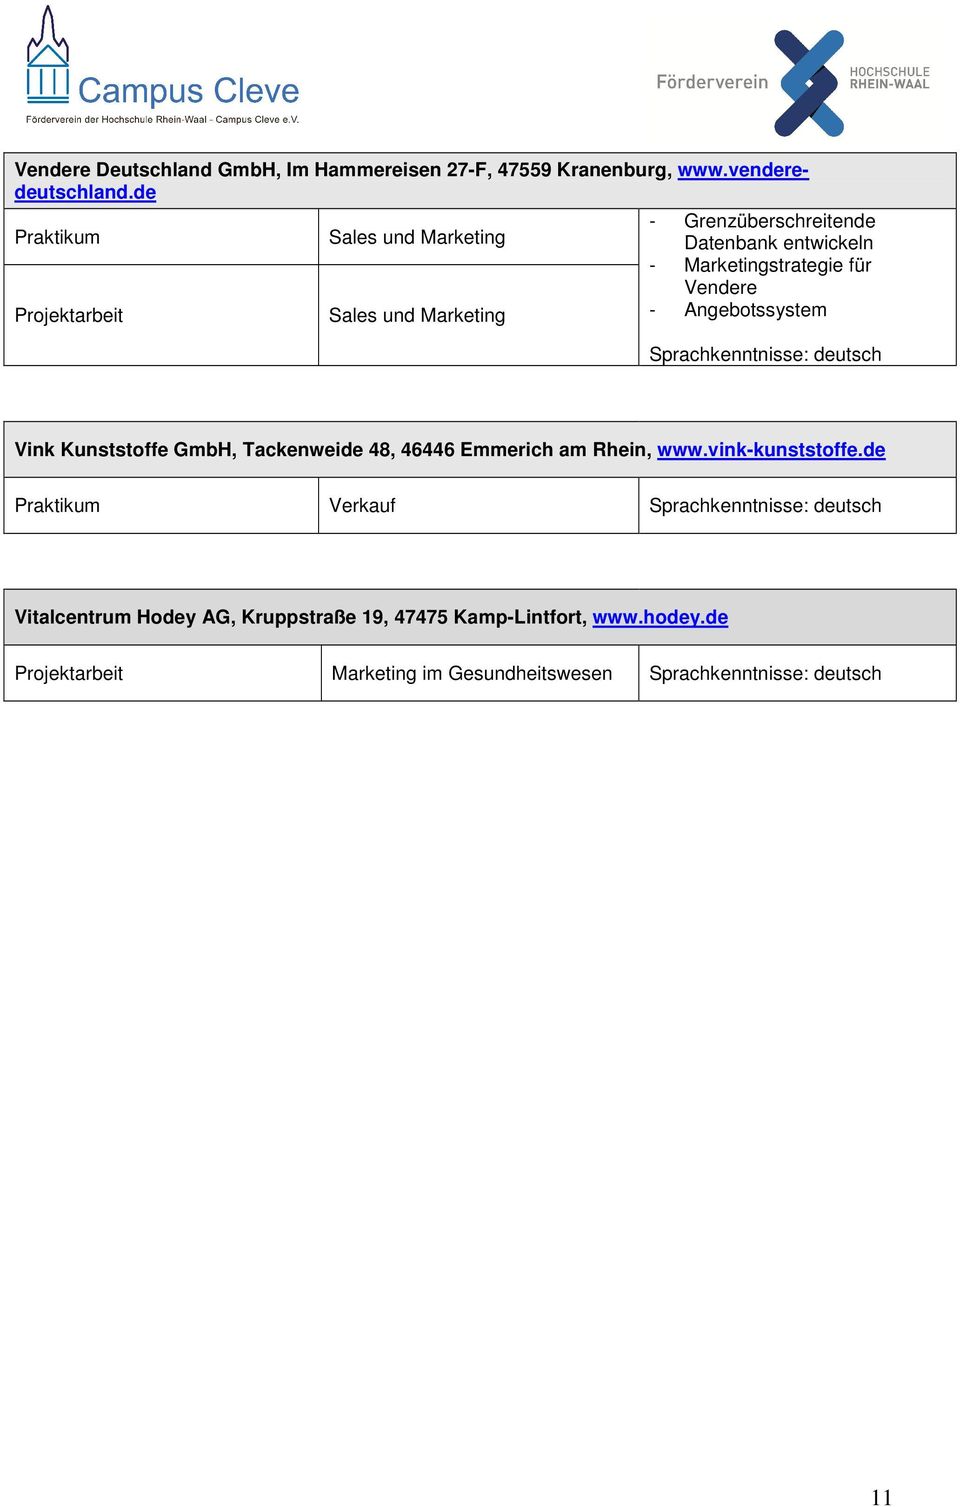 Marketingstrategie für Vendere - Angebotssystem Vink Kunststoffe GmbH, Tackenweide 48, 46446 Emmerich am Rhein,